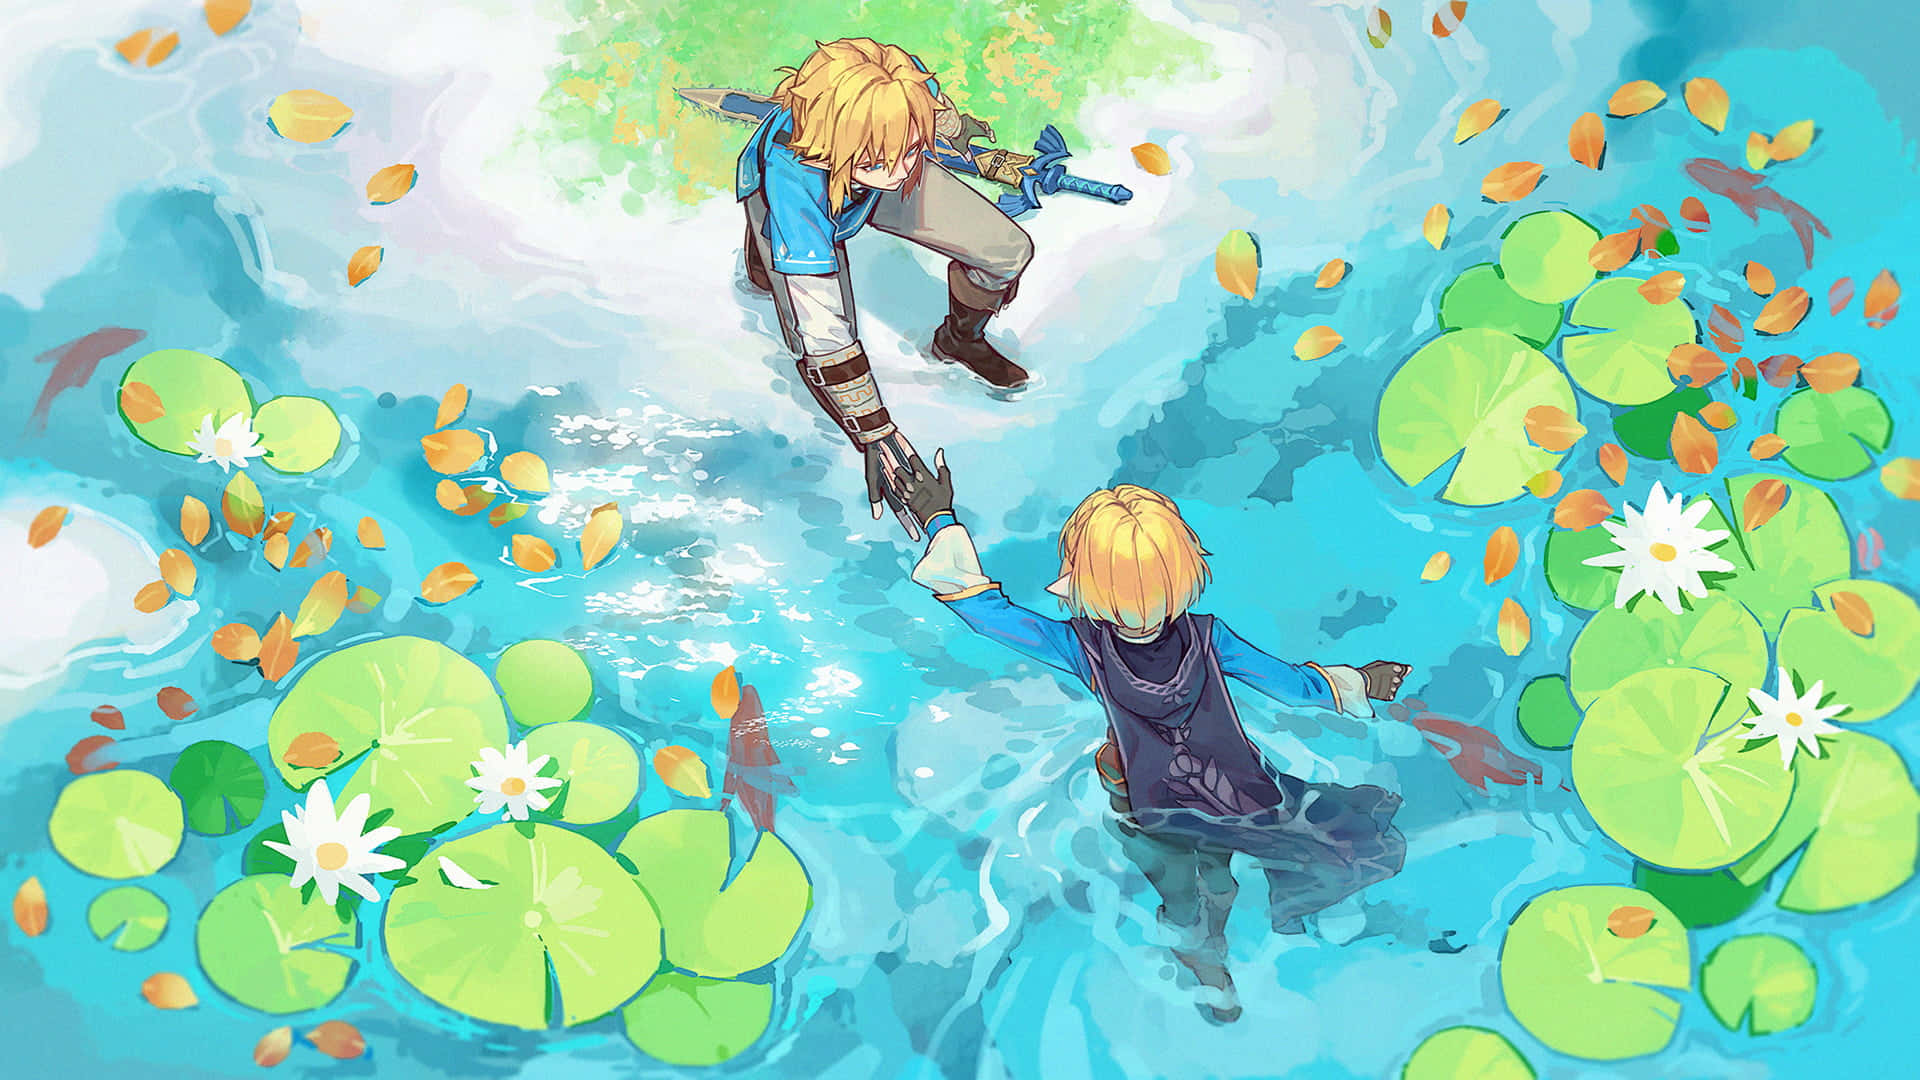 “The Hero of Winds, Link, in his Adventures in The Legend of Zelda.”